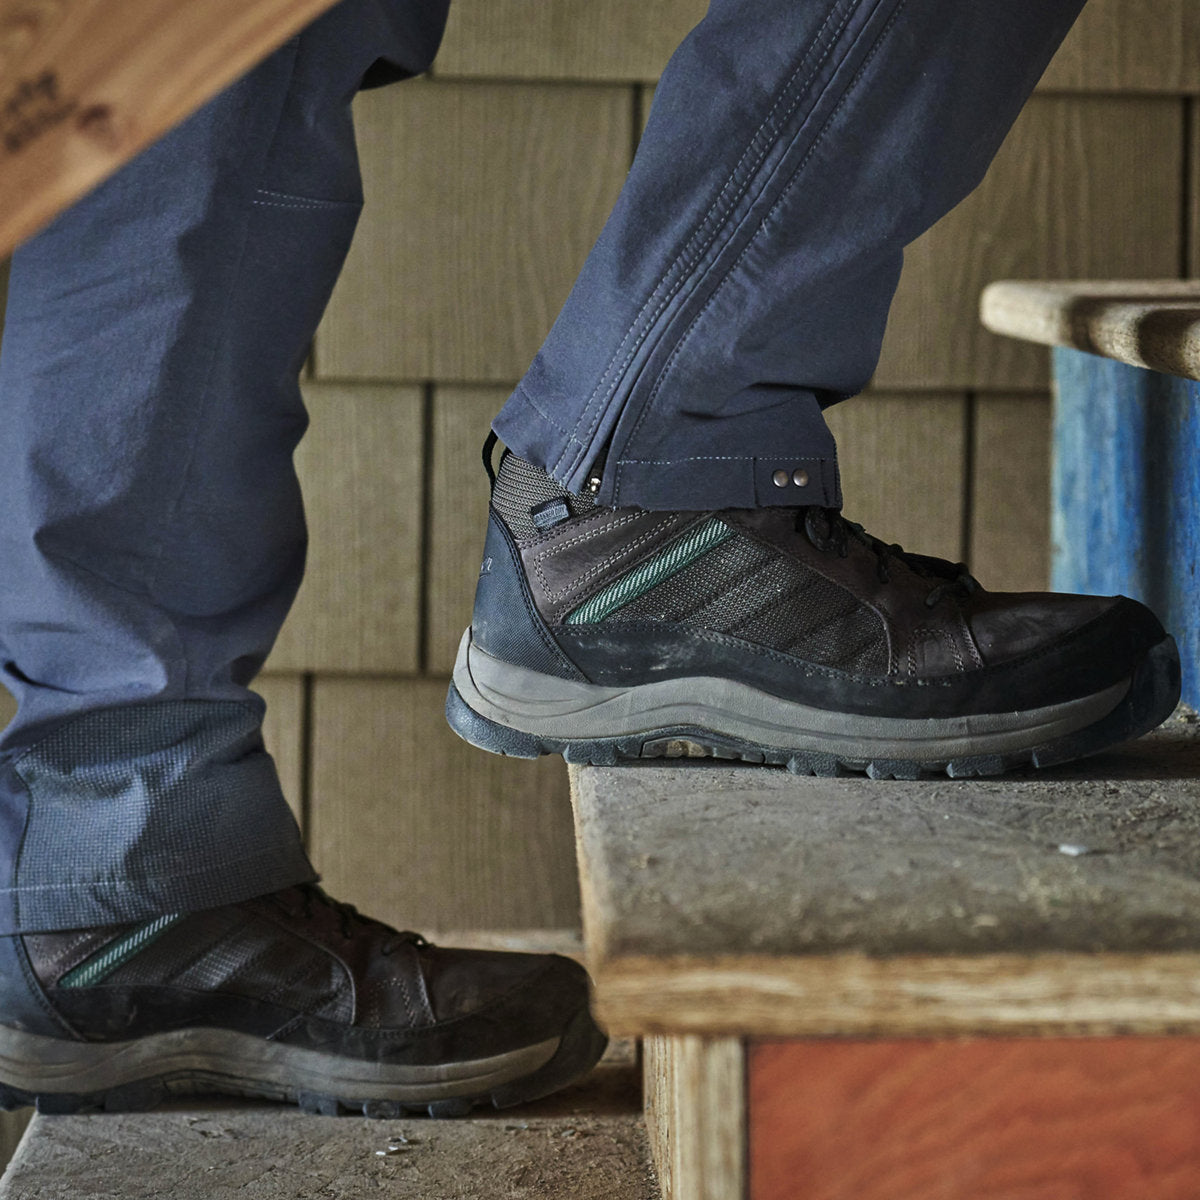 Danner Men's Riverside 4.5" ST Slip Resistant Work Shoe -Brown- 15340  - Overlook Boots